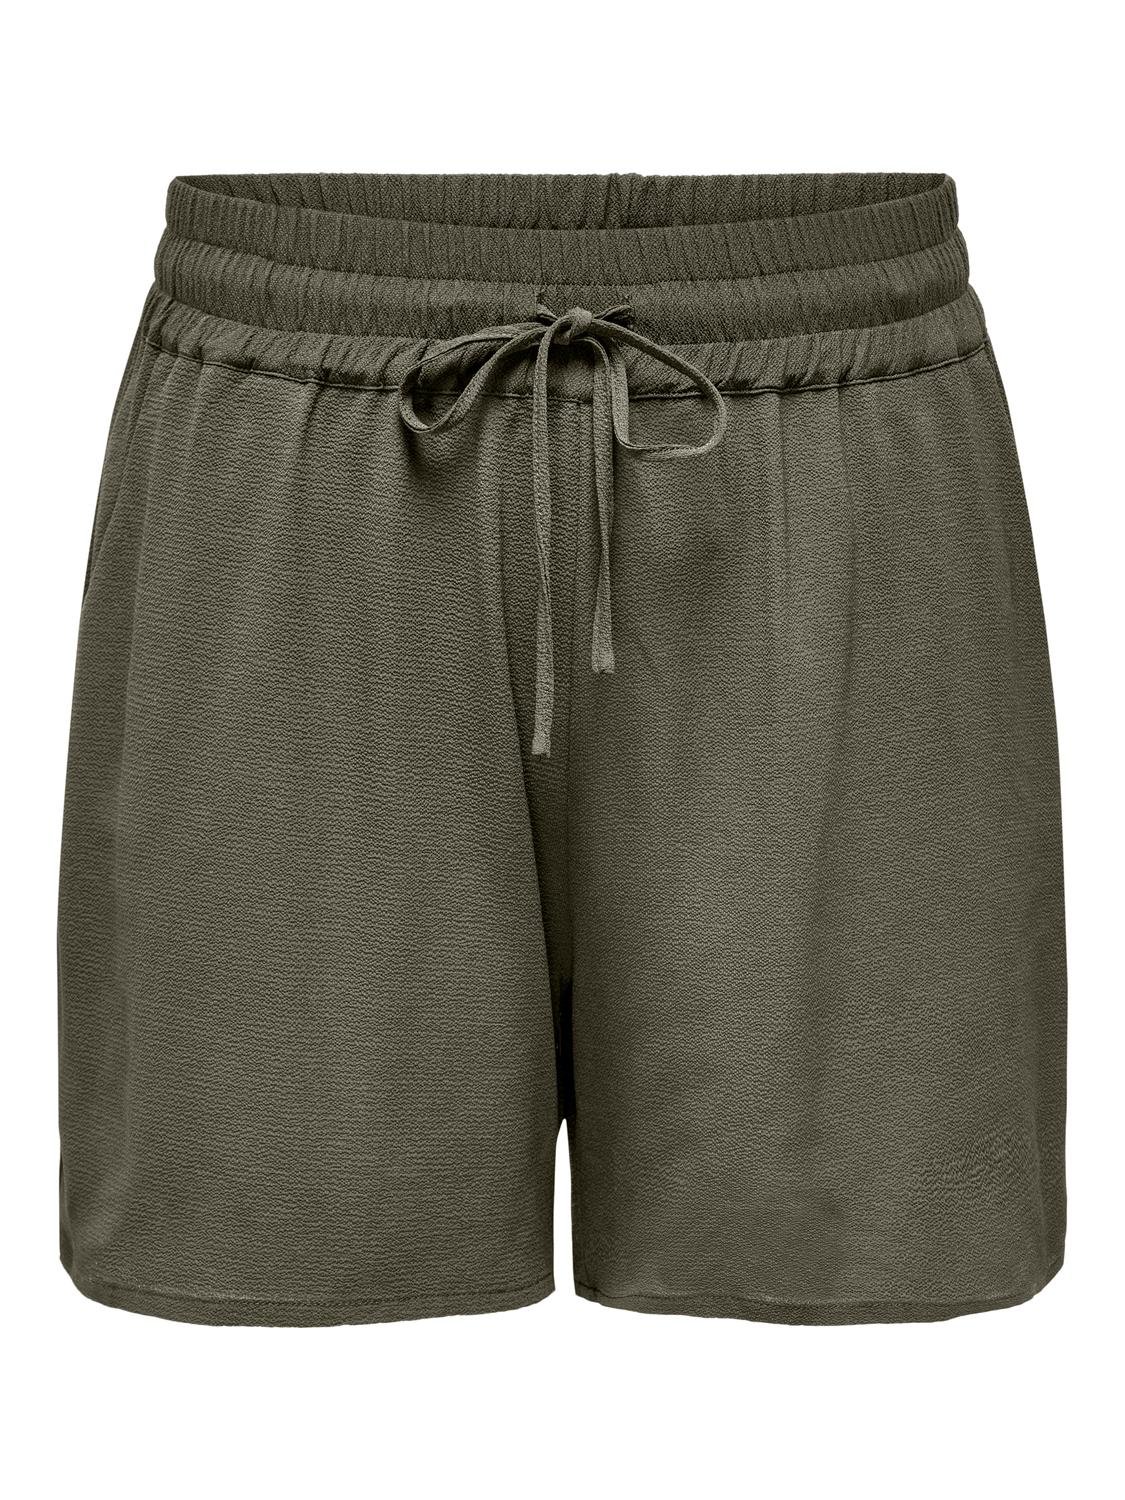 ONLY Normal passform Shorts -Kalamata - 15312230